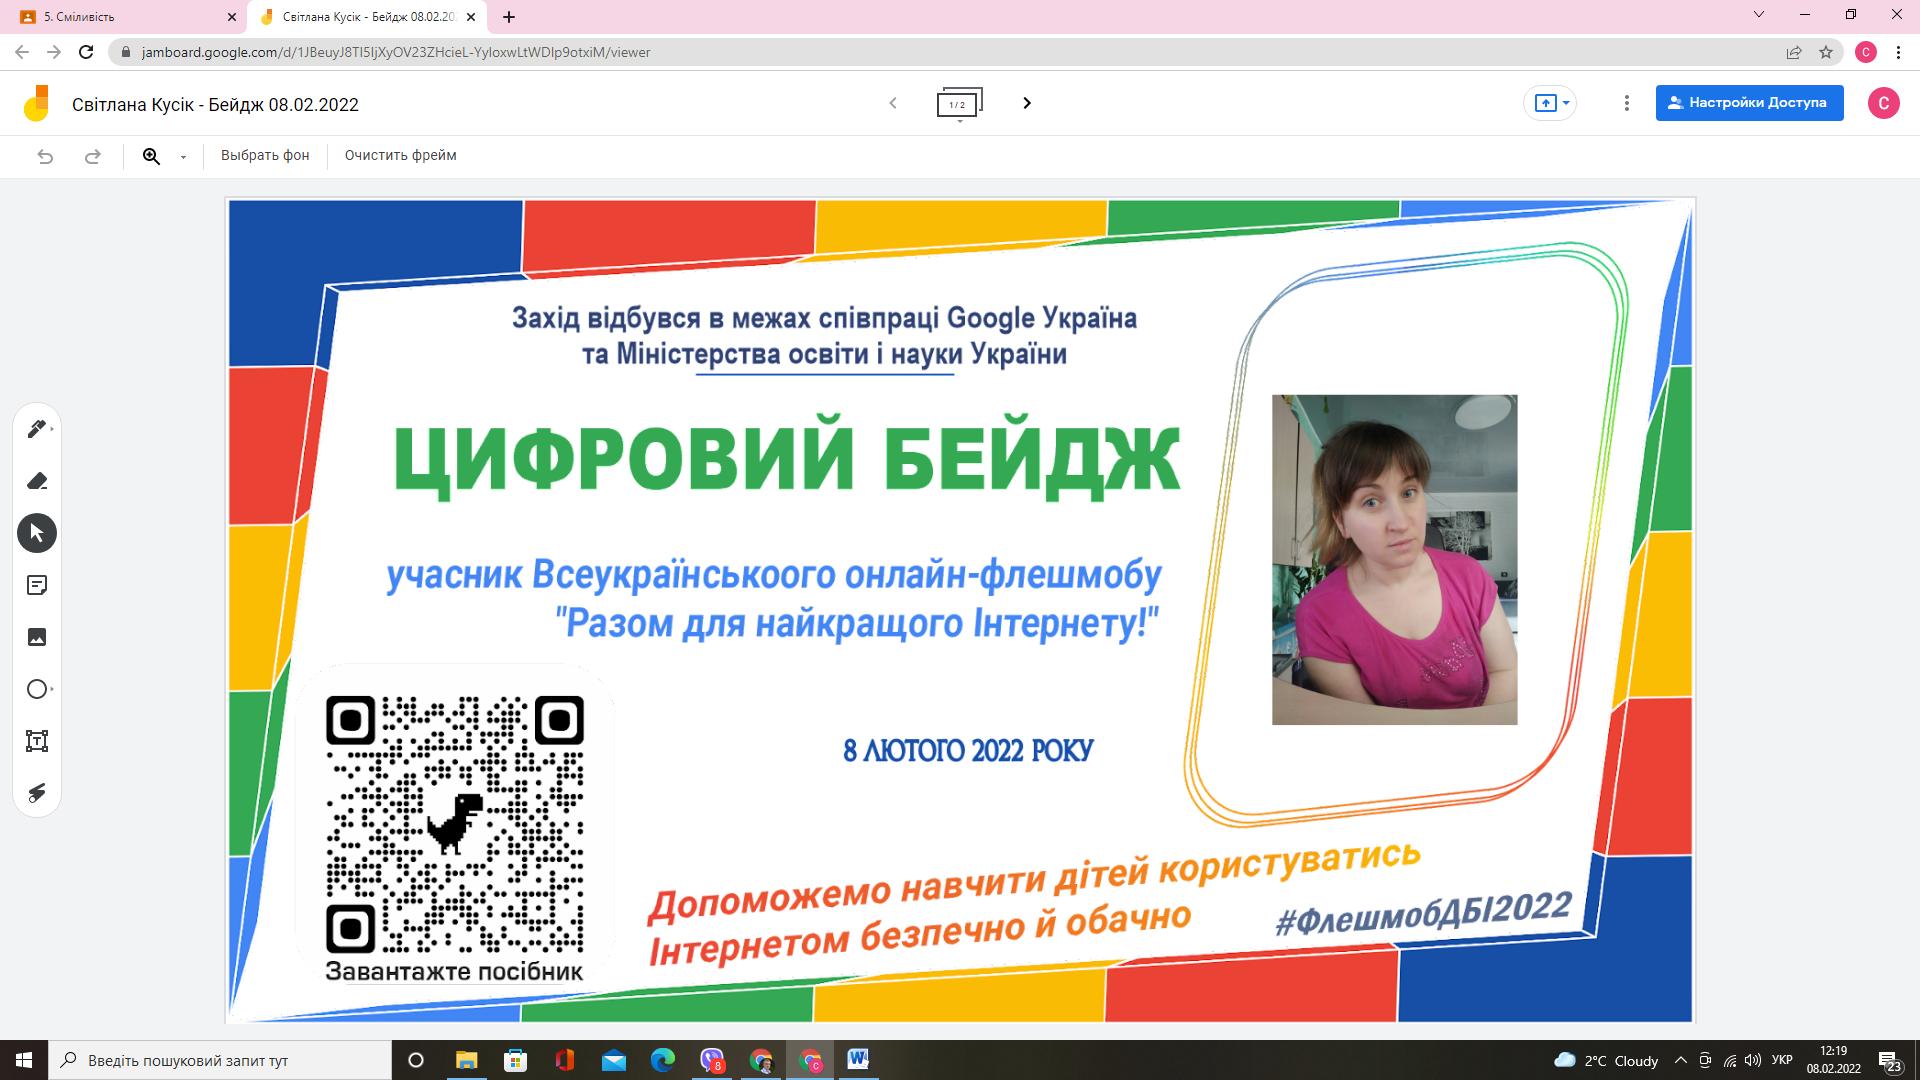 Всеукраїнський онлайн-флешмоб освітян до Дня безпечного інтернету